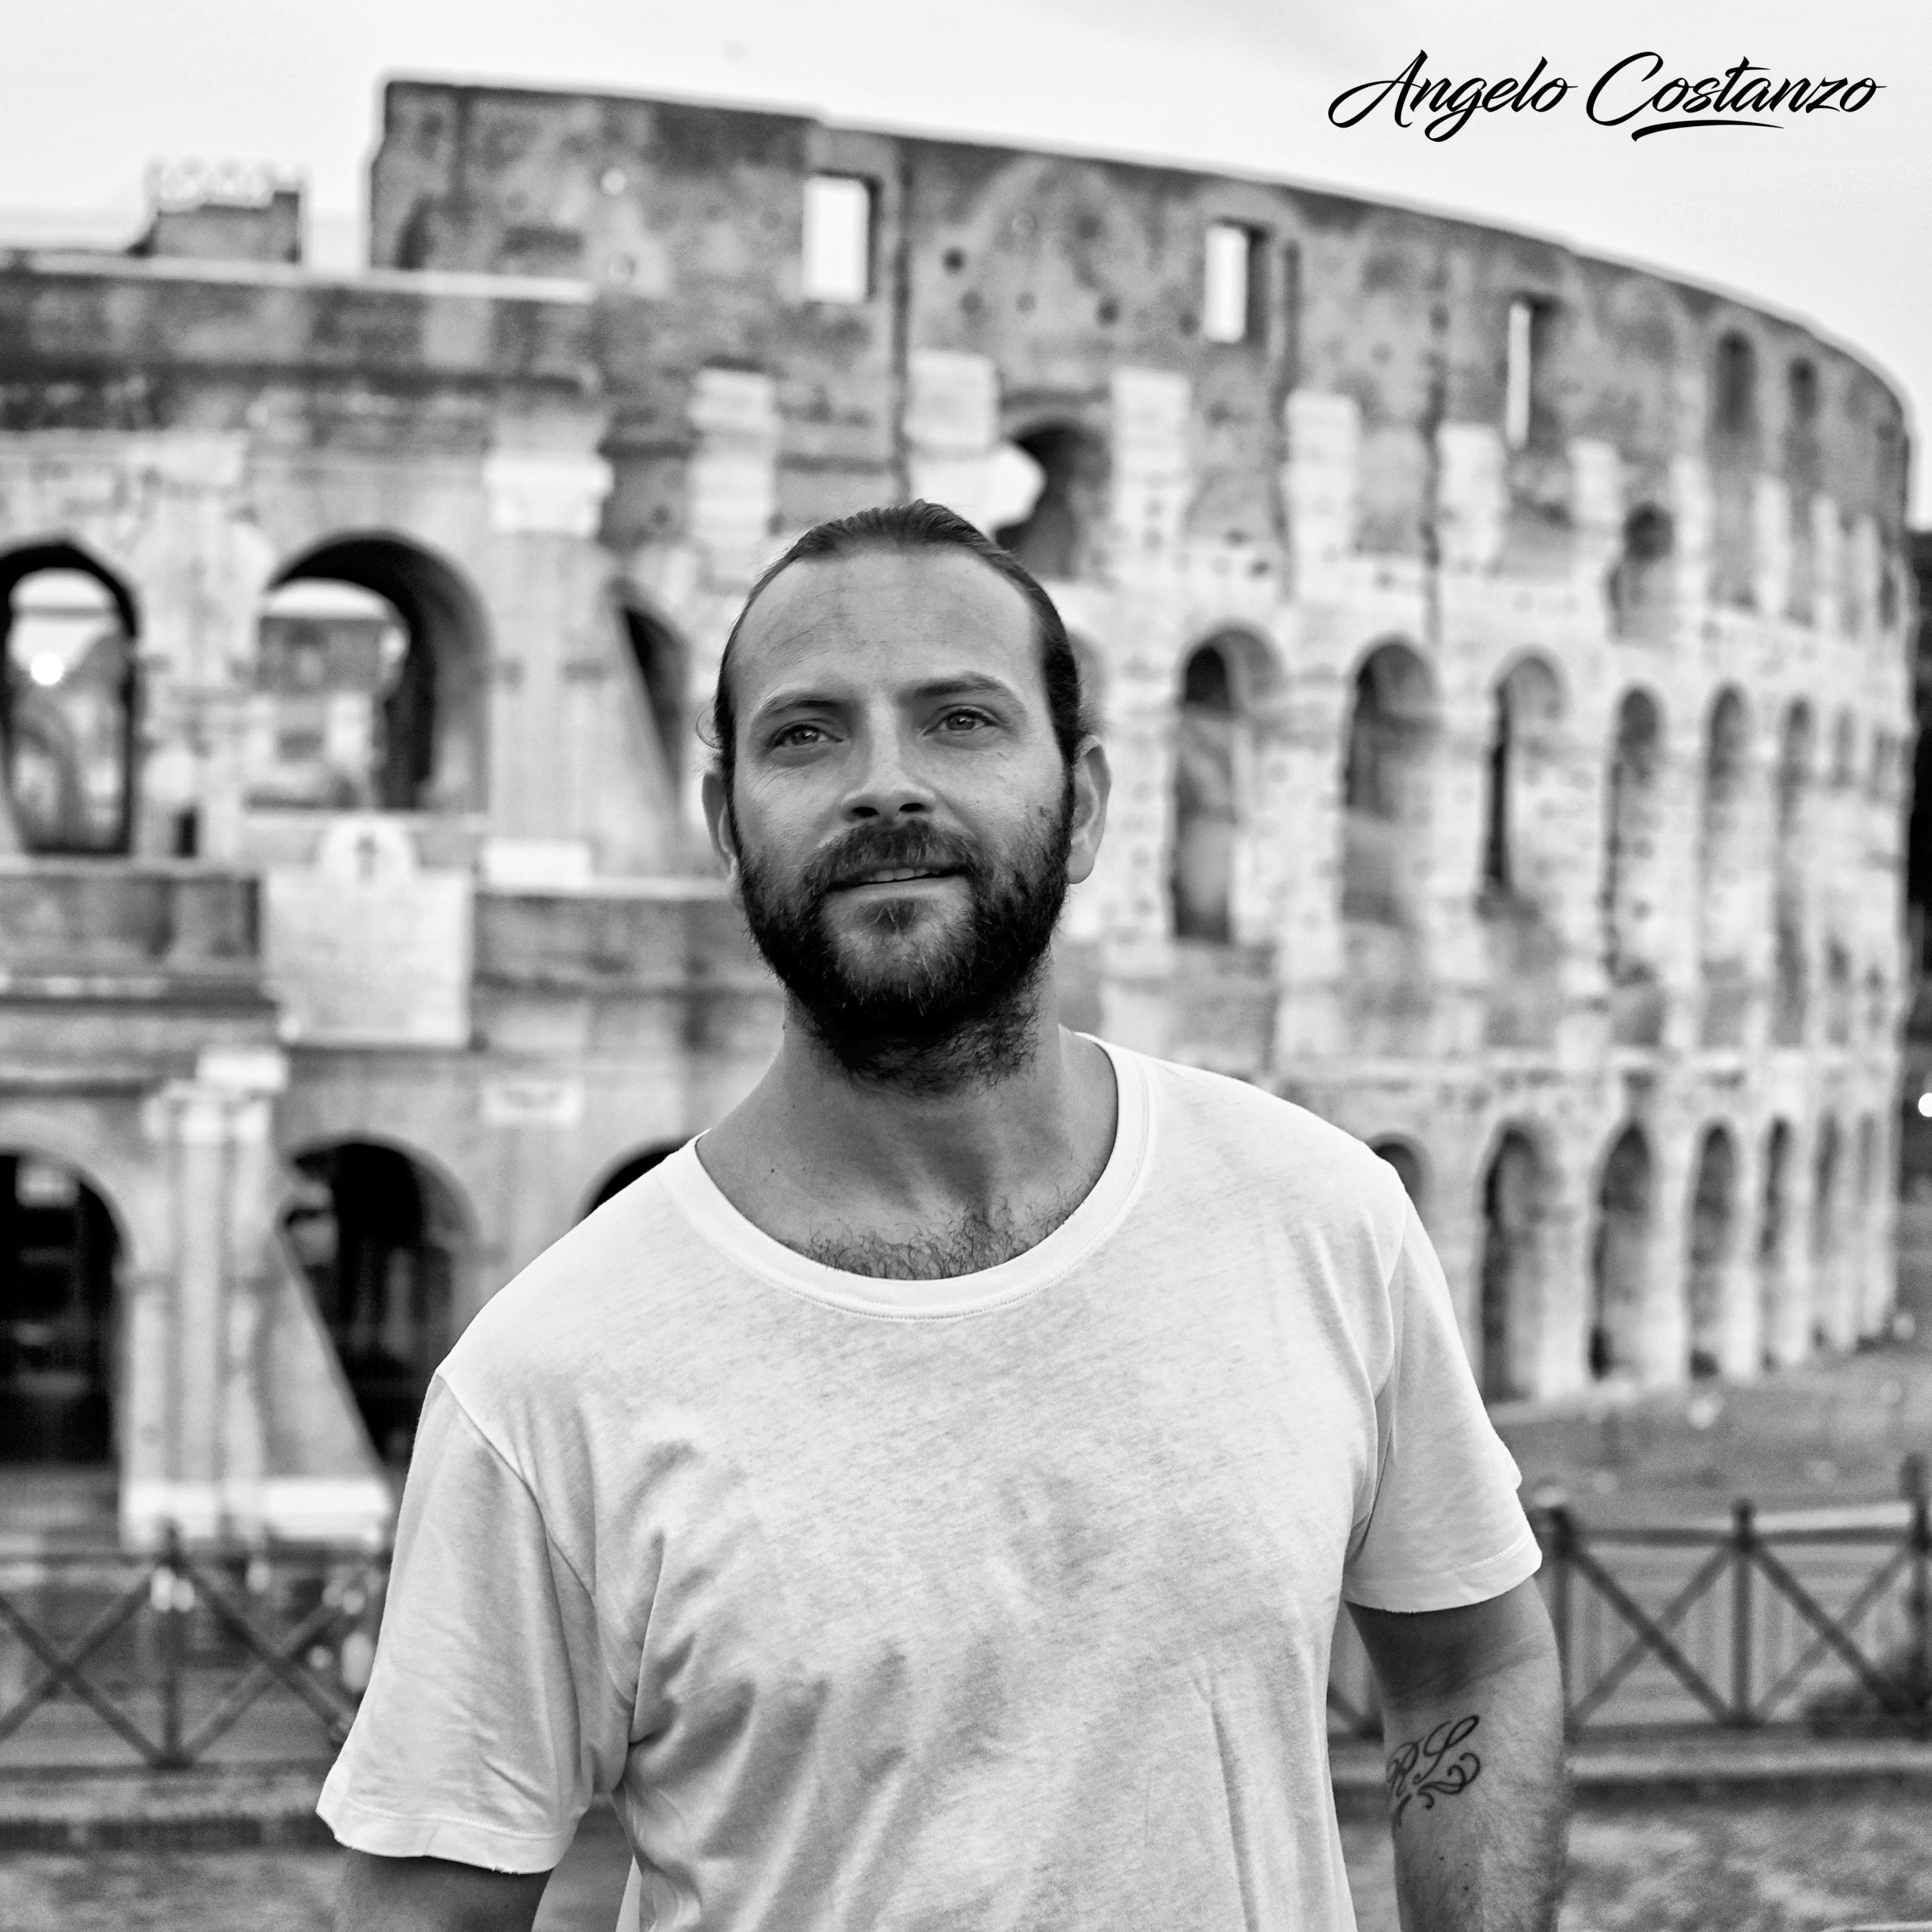 Alessandro Borghi “al cinema nel cuore di Roma”